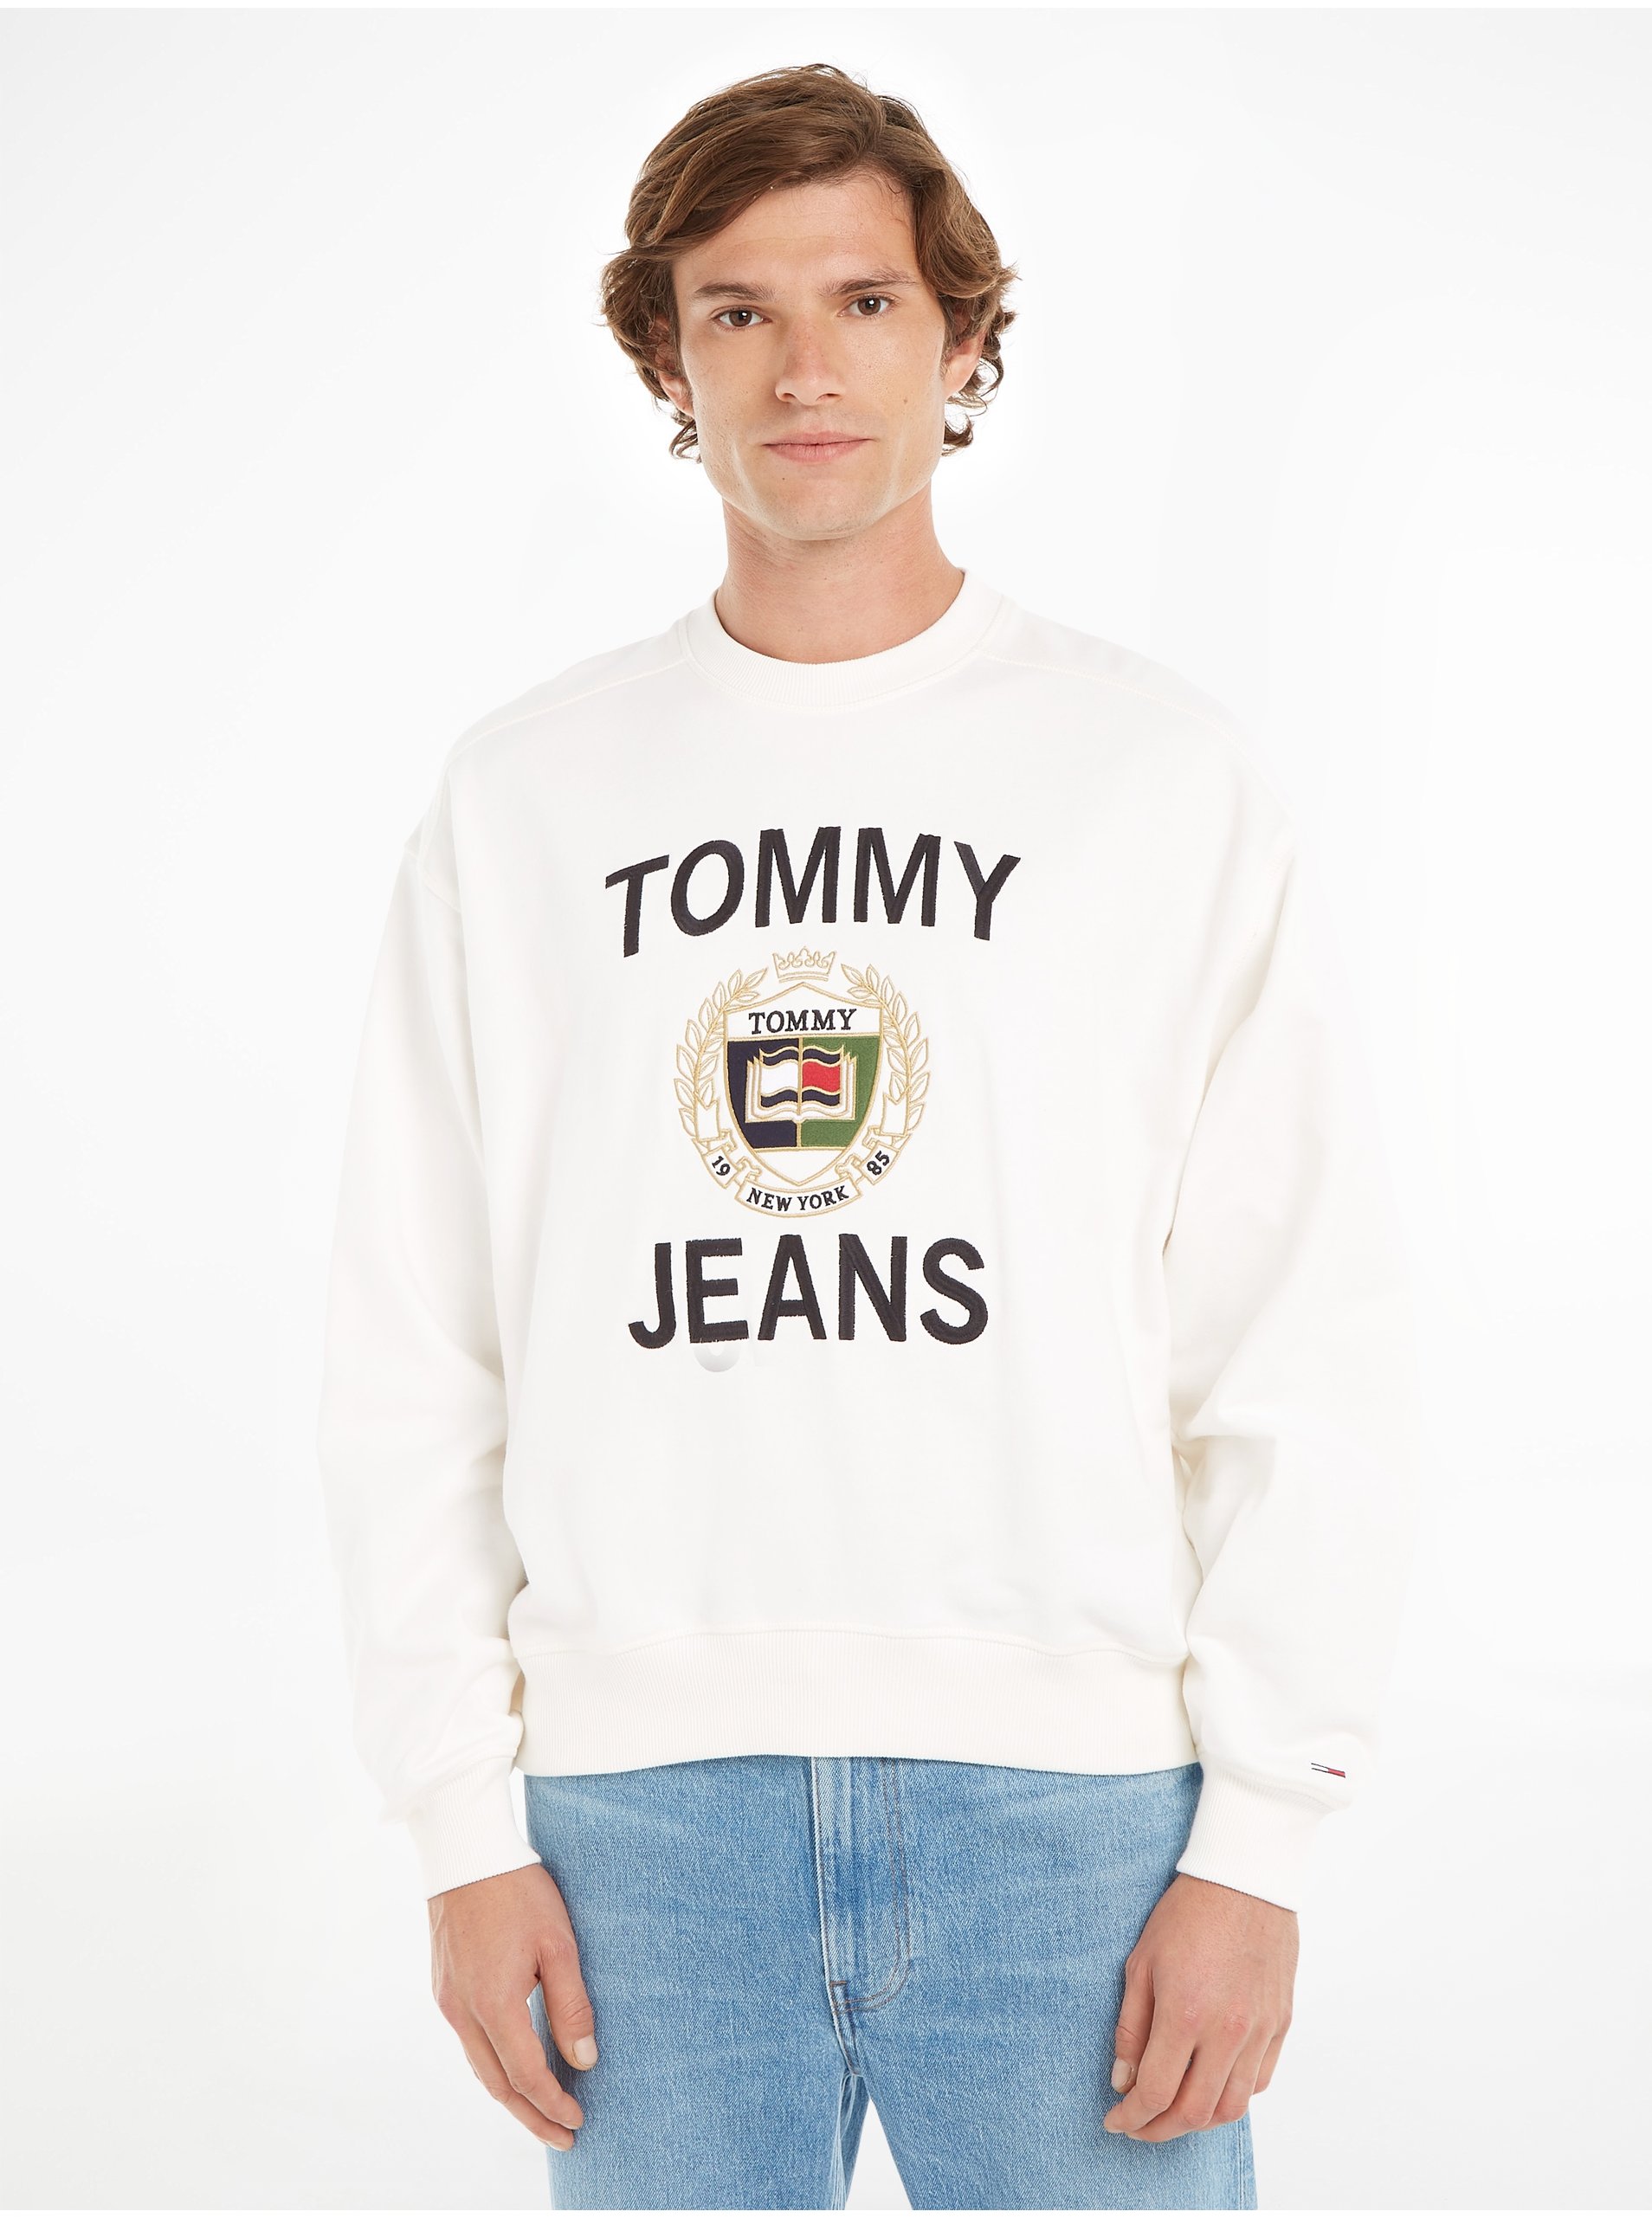 Lacno Mikiny bez kapuce pre mužov Tommy Jeans - biela